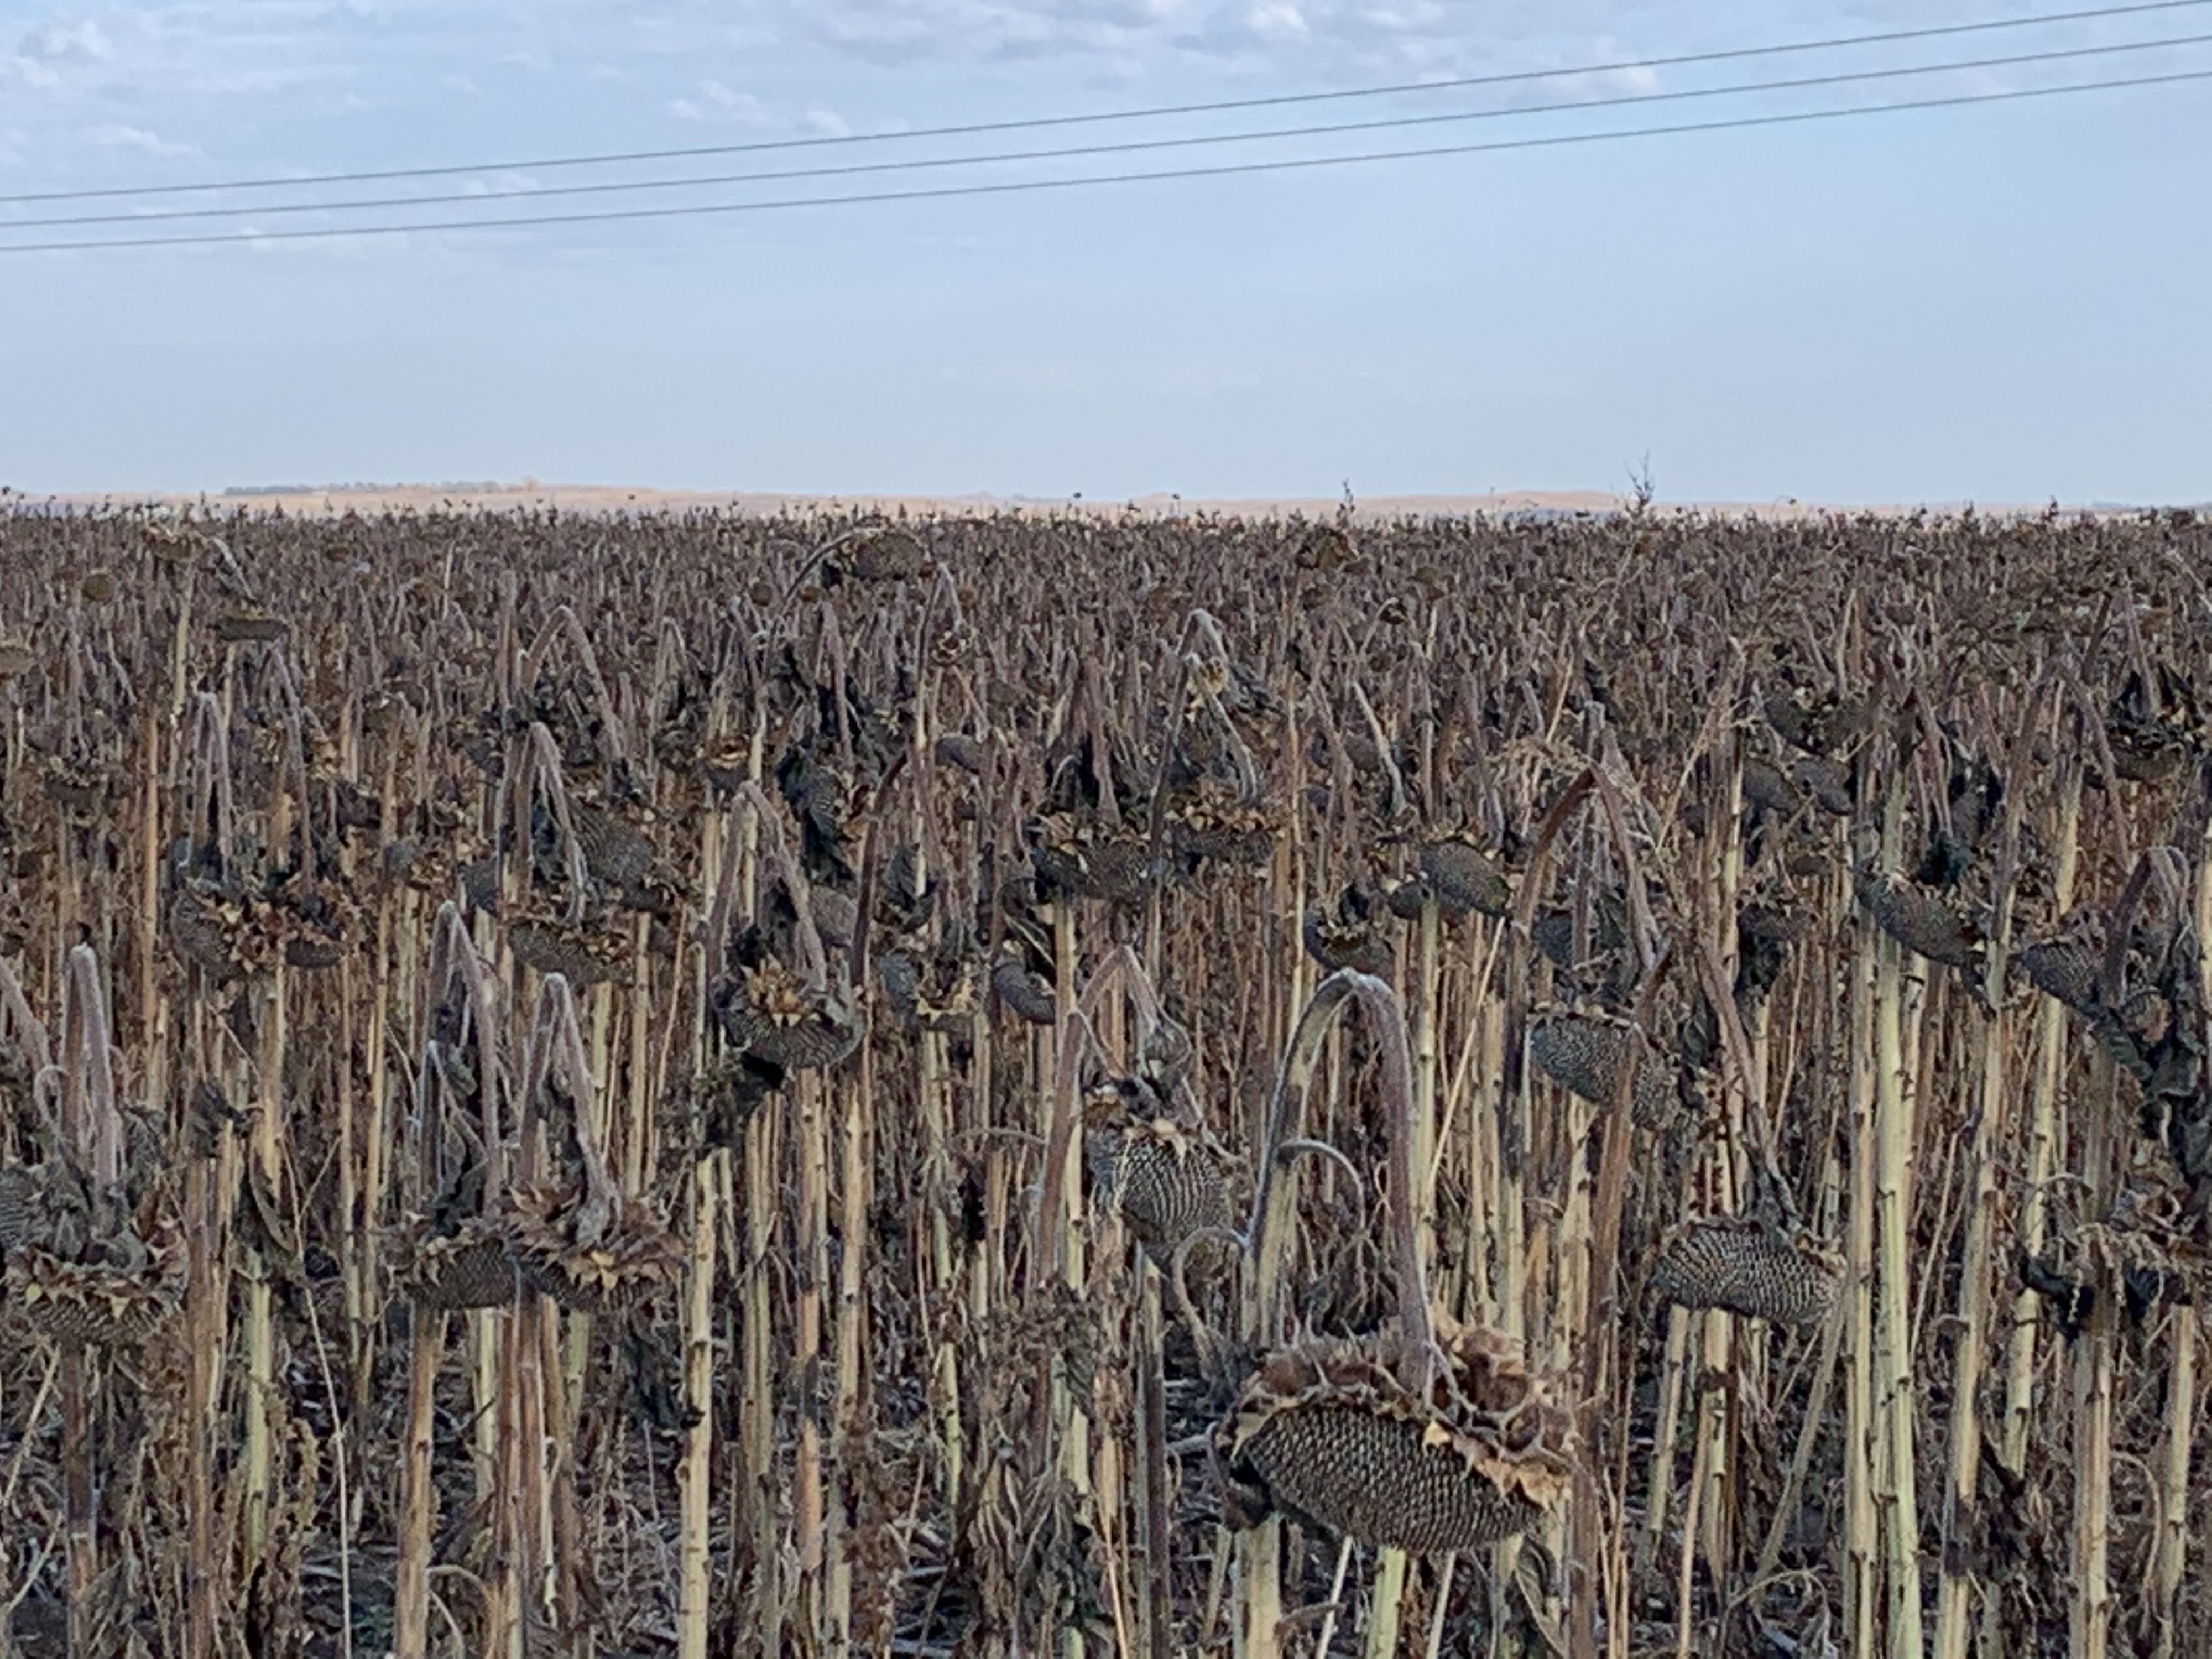 Mid-morning Ag News, November 11, 2021: South Dakota farmer is hopeful for this year's sunflower crop